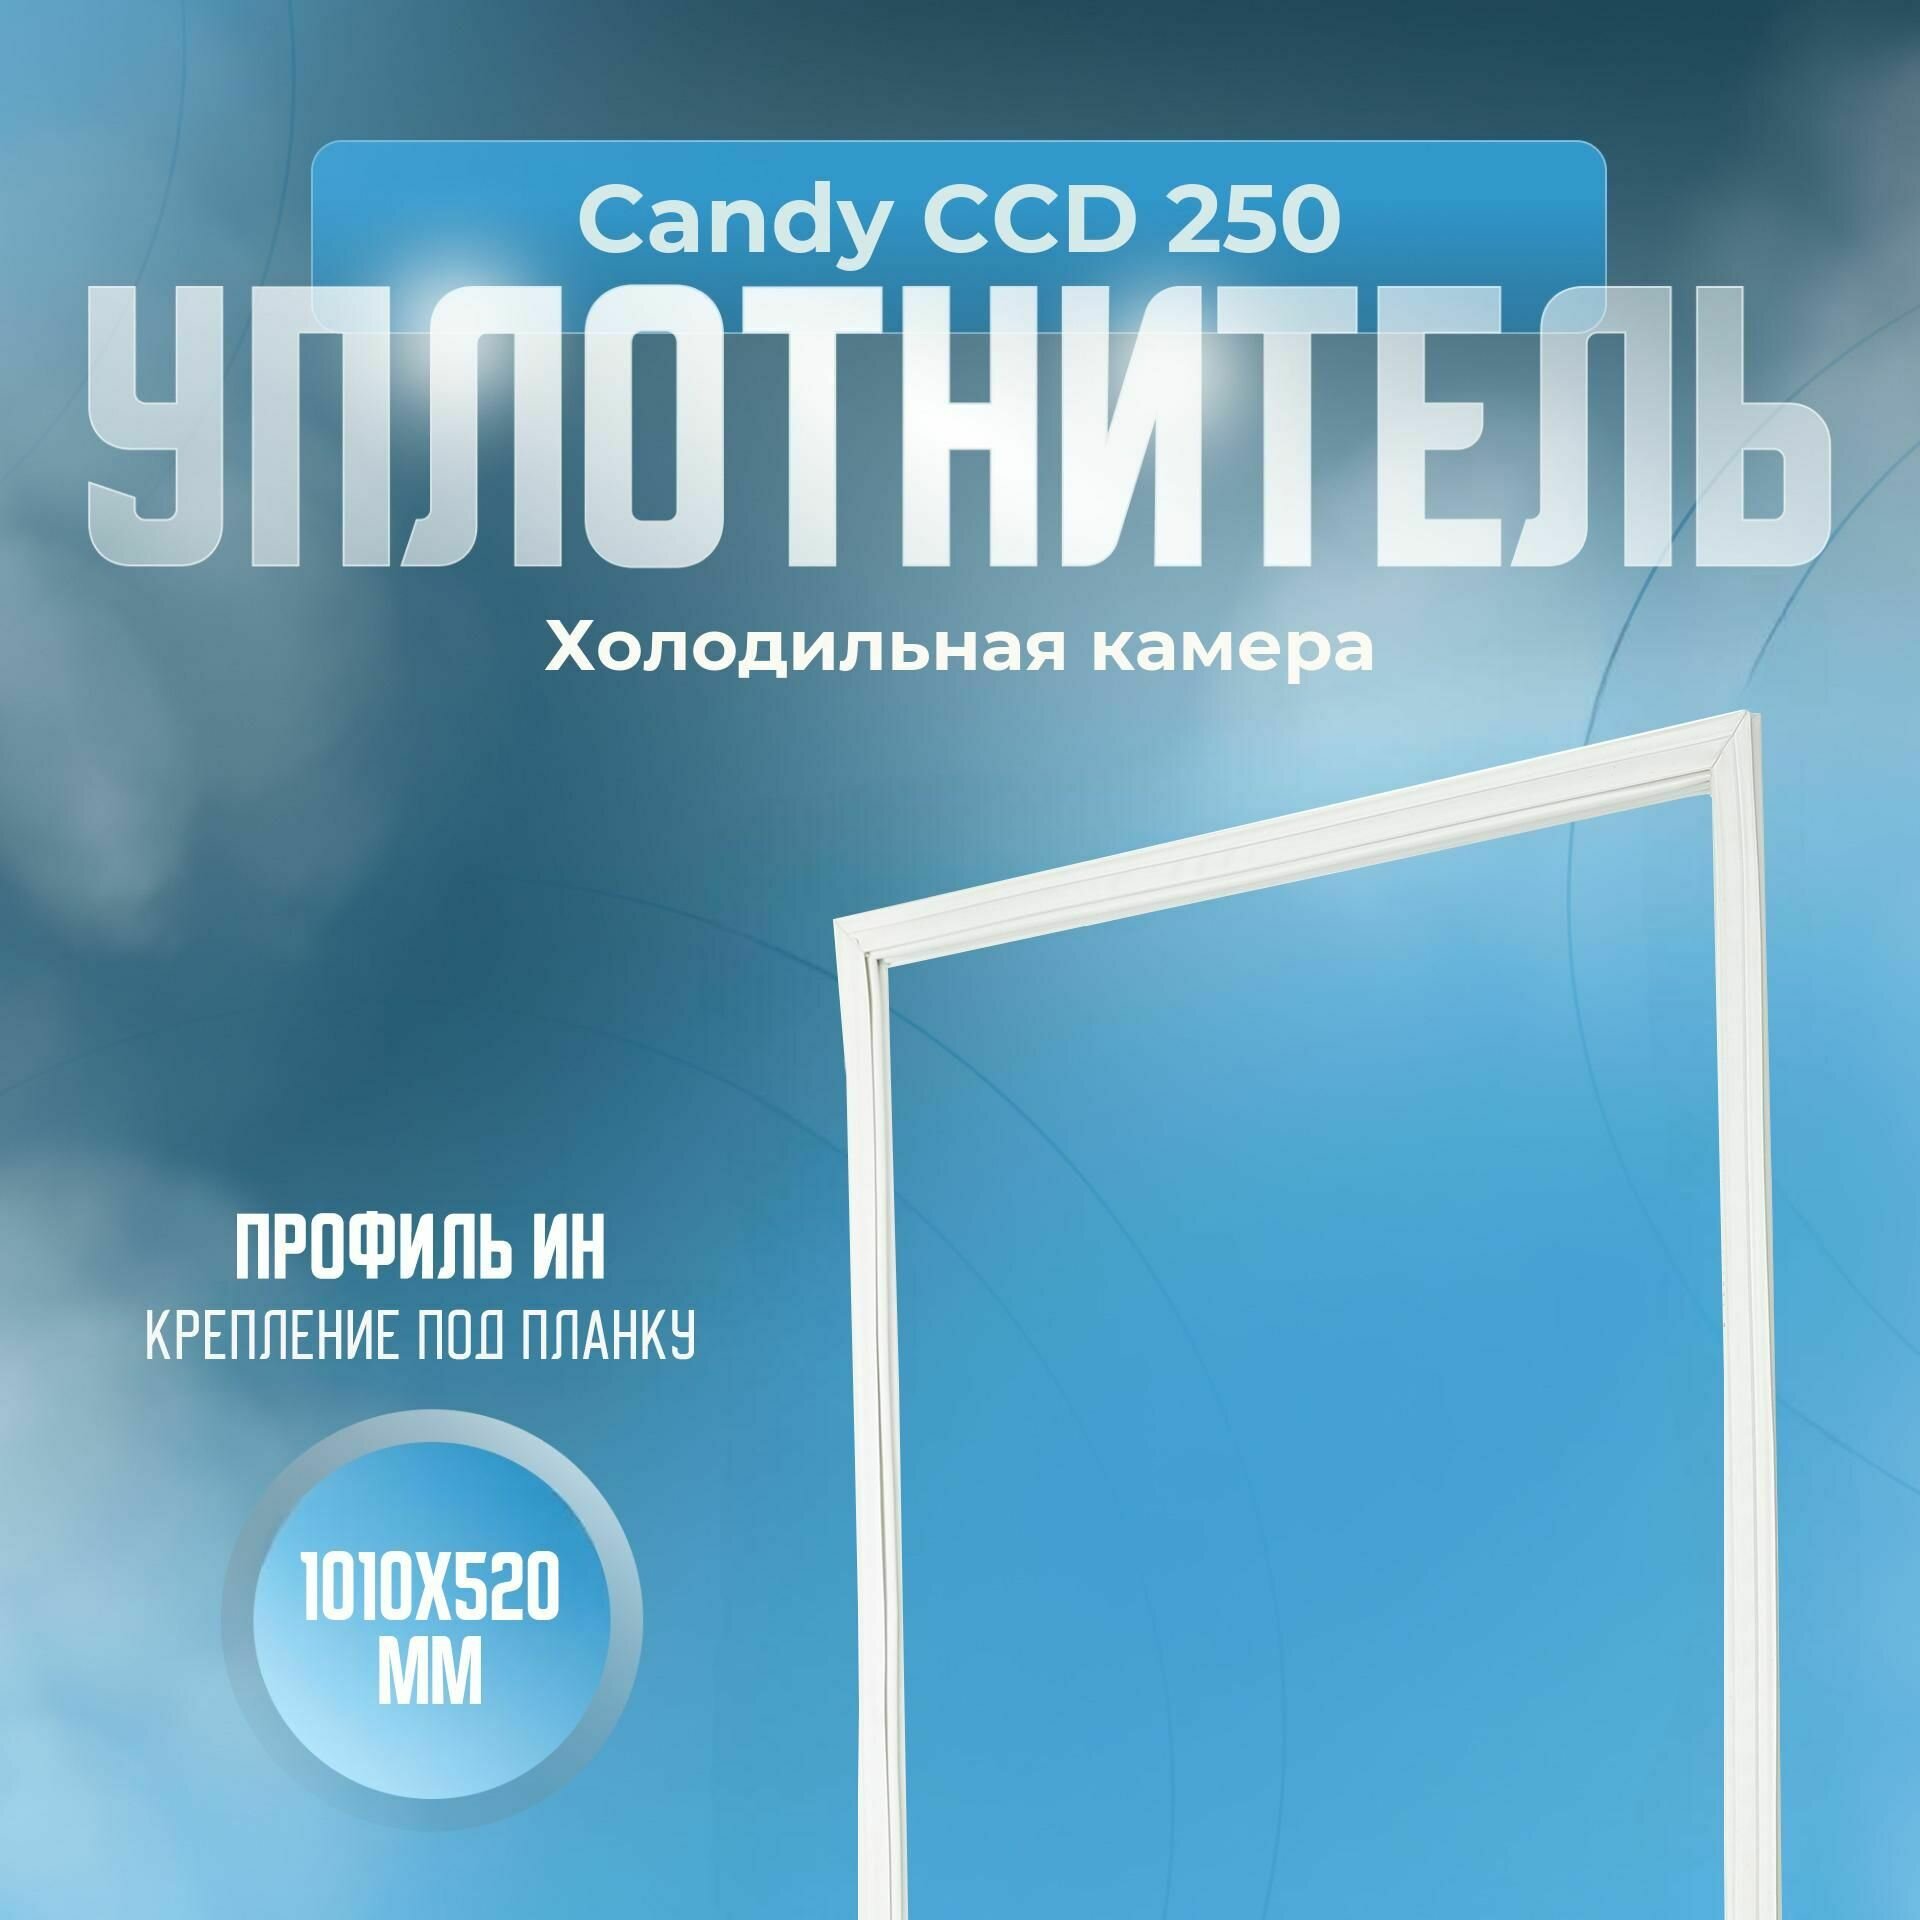 Уплотнитель Candy CCD 250. х. к, Размер - 1010x520 мм. ИН